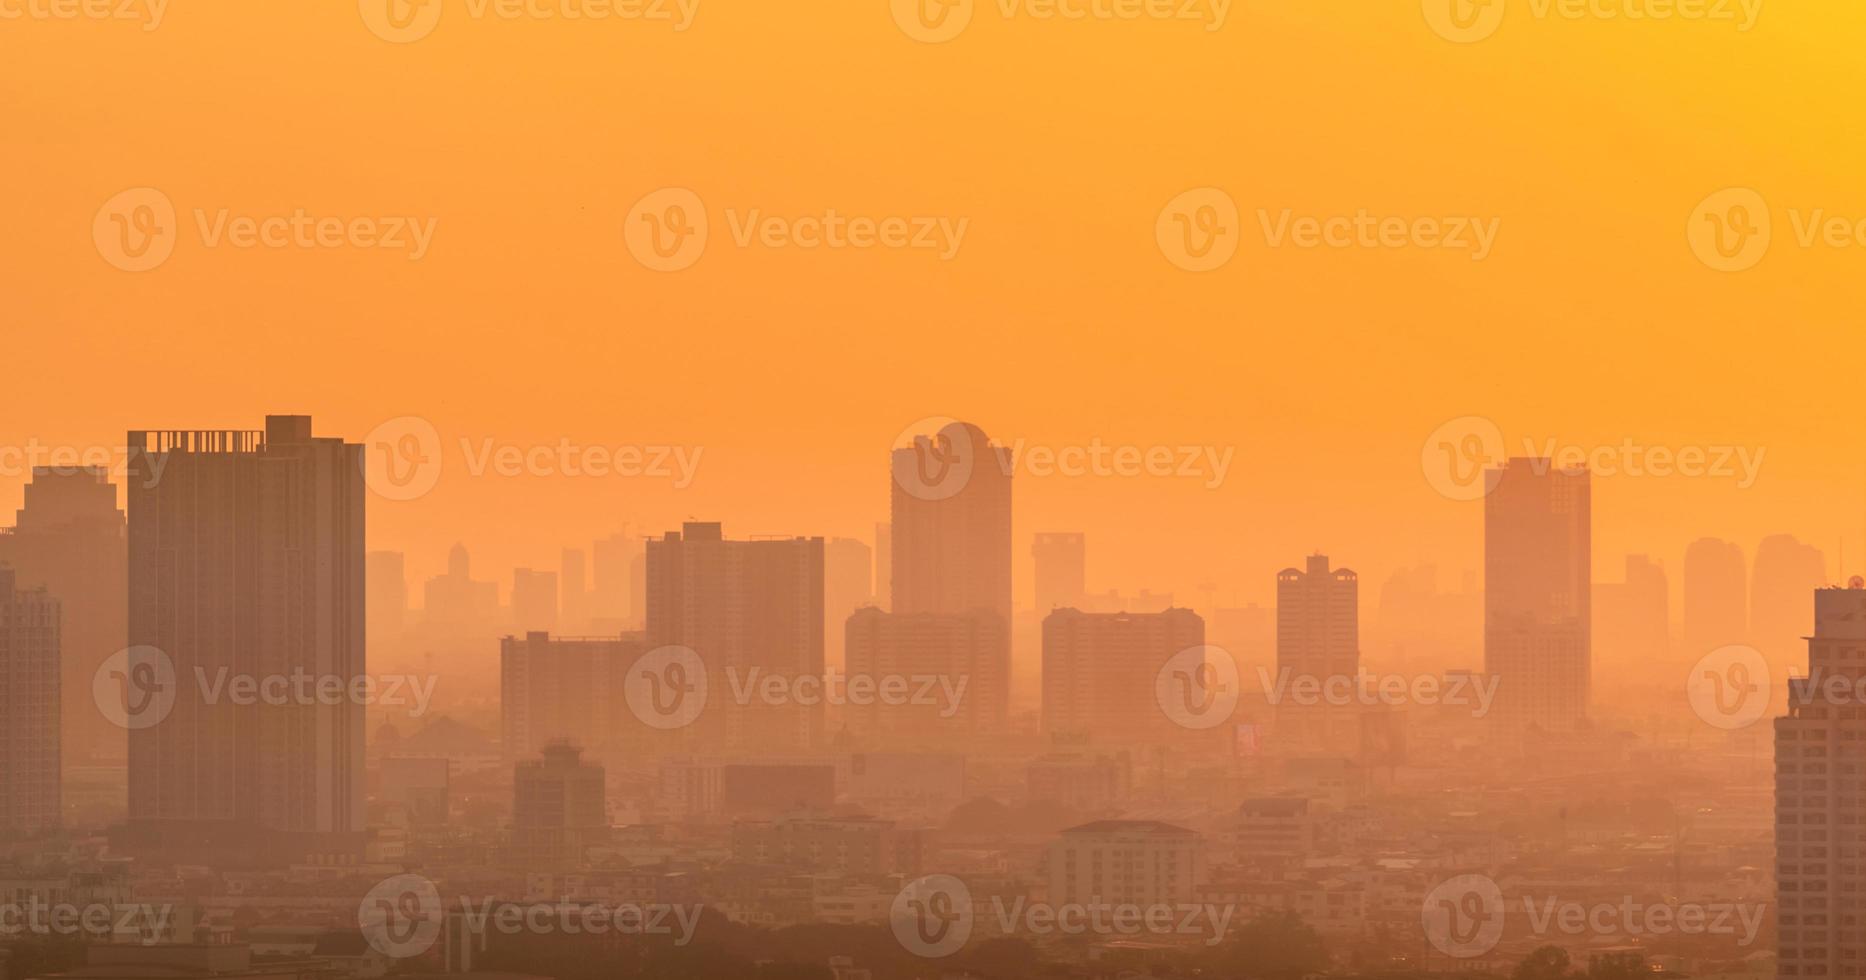 inquinamento dell'aria. smog e polvere fine di pm2,5 città coperta al mattino con il cielo arancione dell'alba. paesaggio urbano con aria inquinata. ambiente sporco. polvere tossica urbana. aria malsana. vita malsana urbana. foto